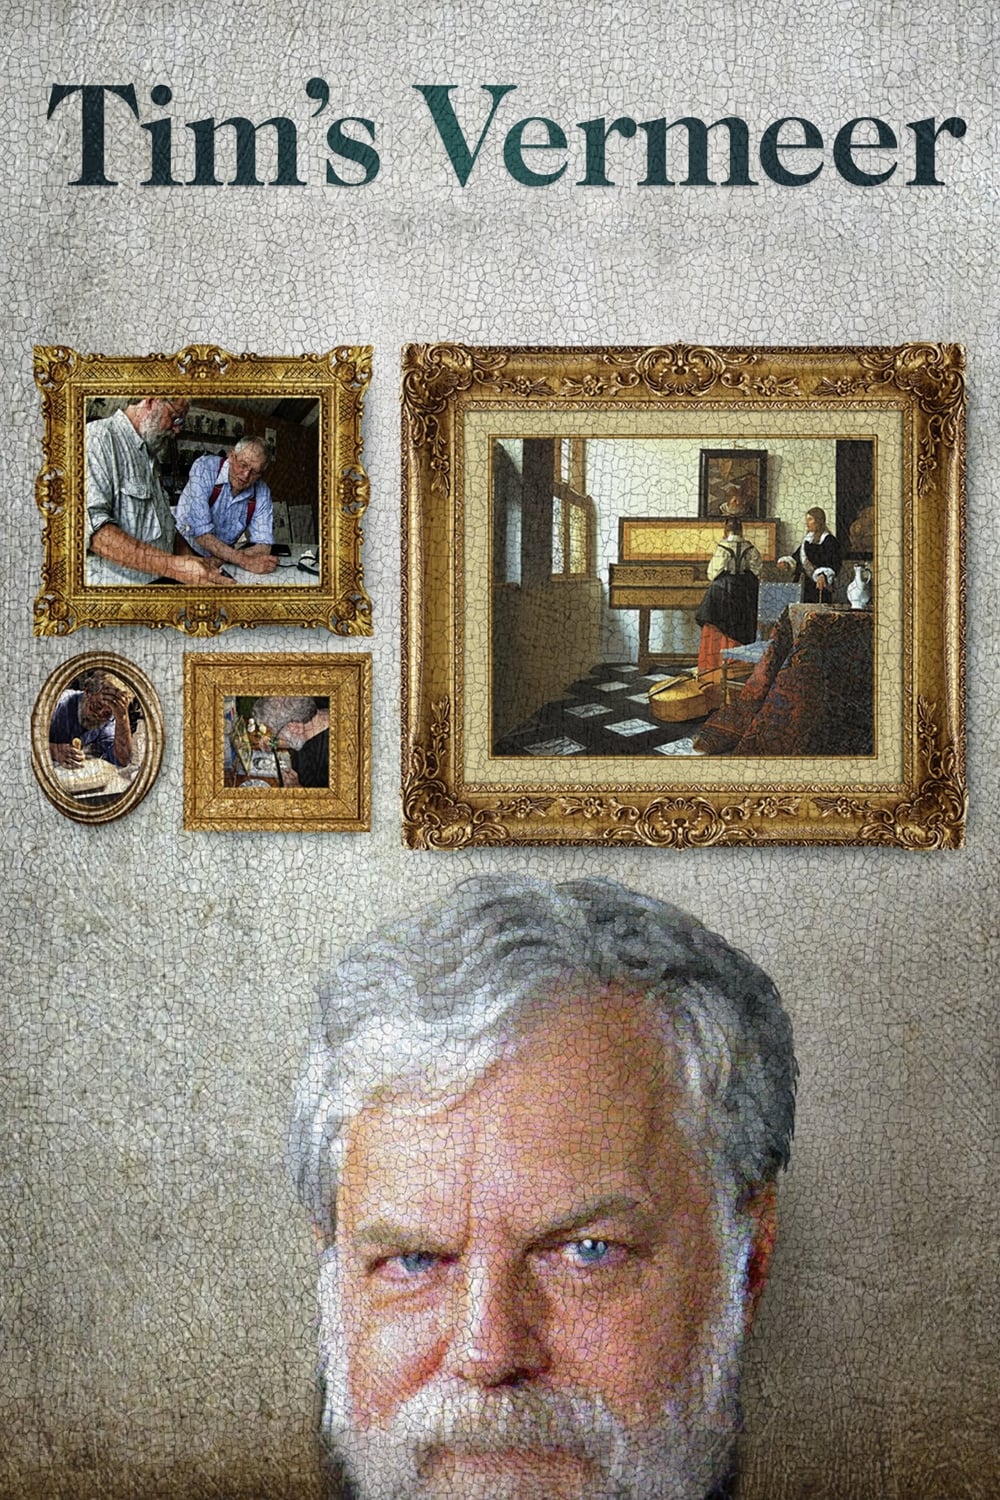 Tim's Vermeer (2013)